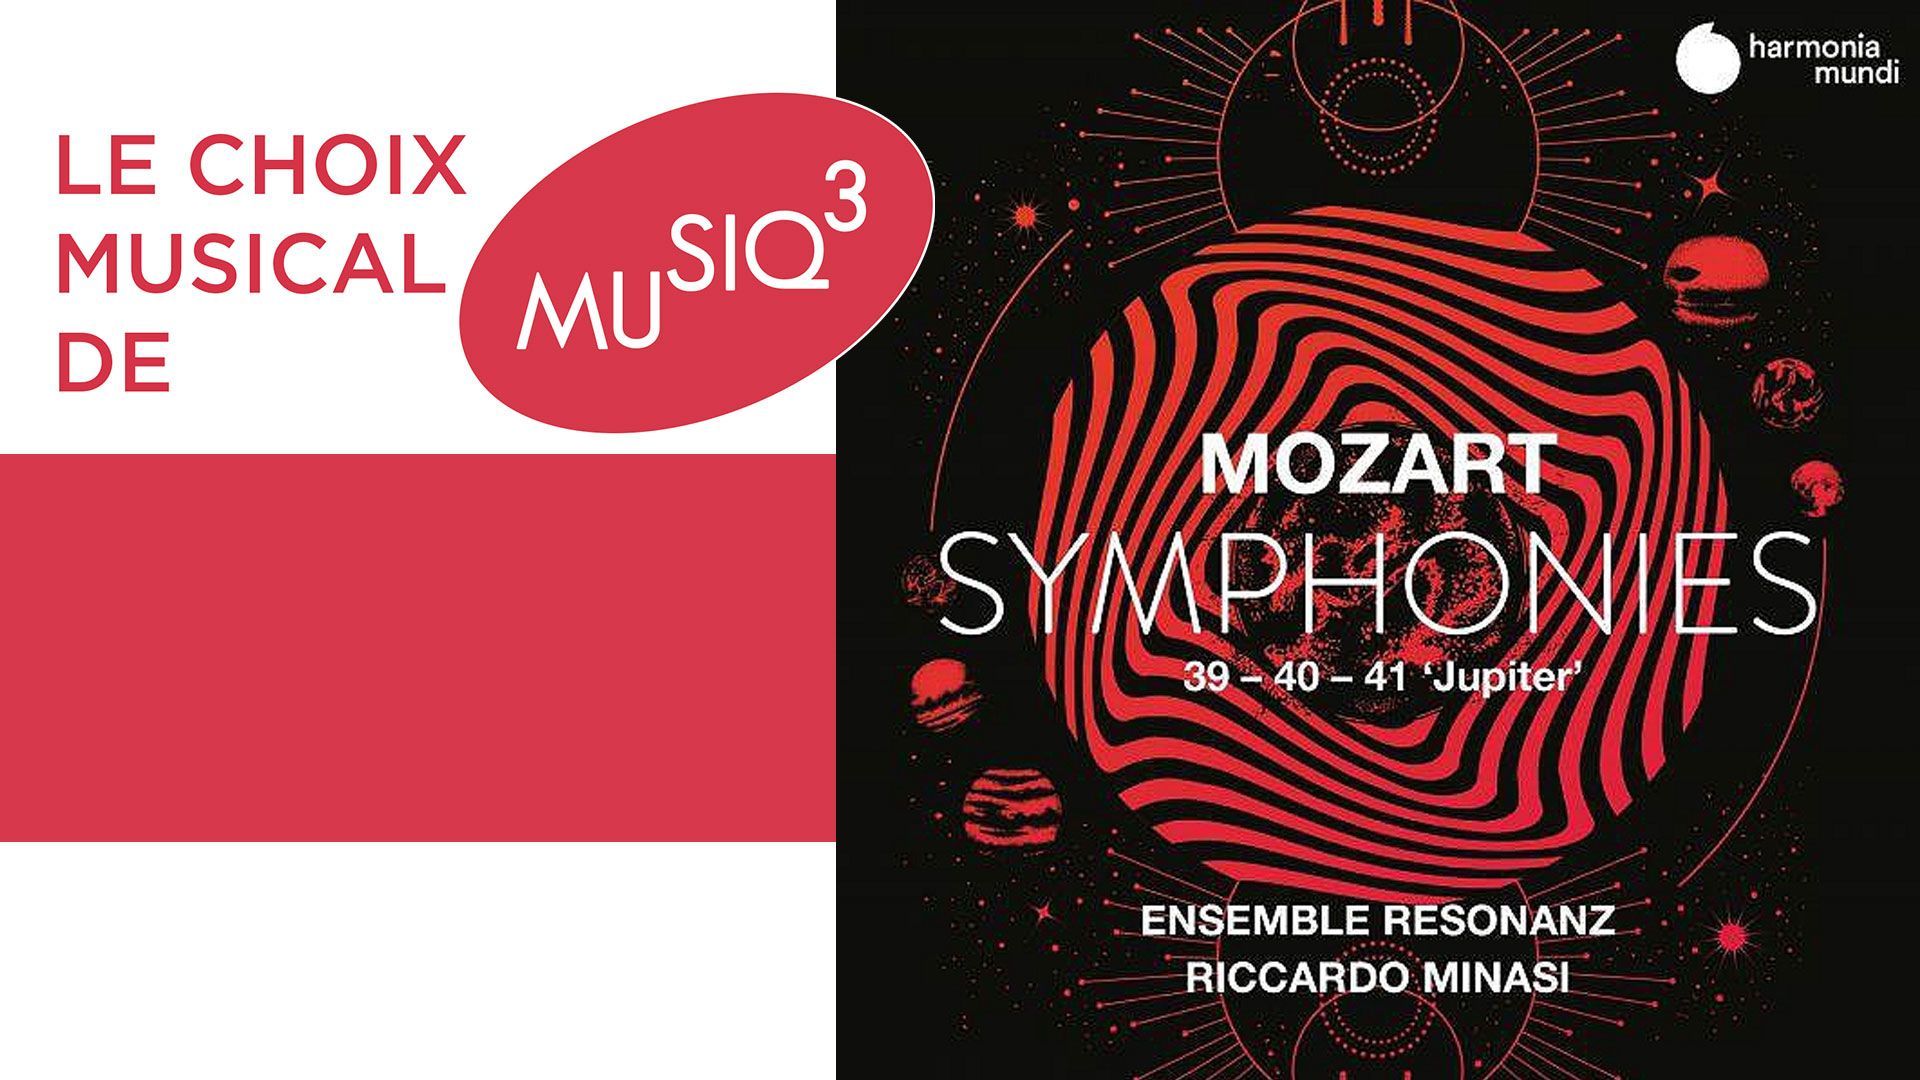 Les Symphonies n°39, 40 et 41 de Mozart par l’Ensemble Resonanz : tradition et authenticité